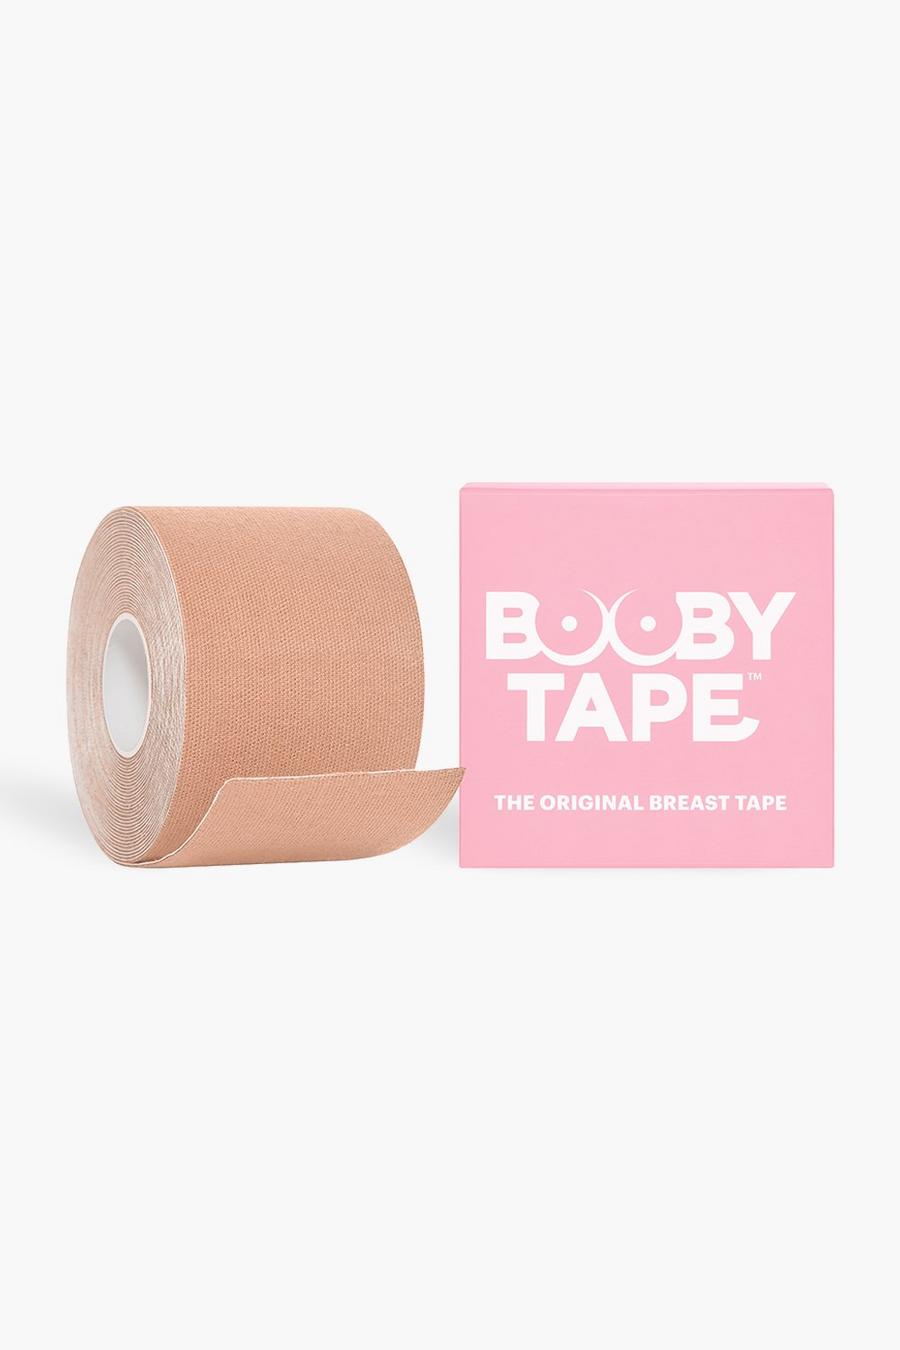 Booby Tape - Nastro sostitutivo reggiseno color carne - 5 m image number 1